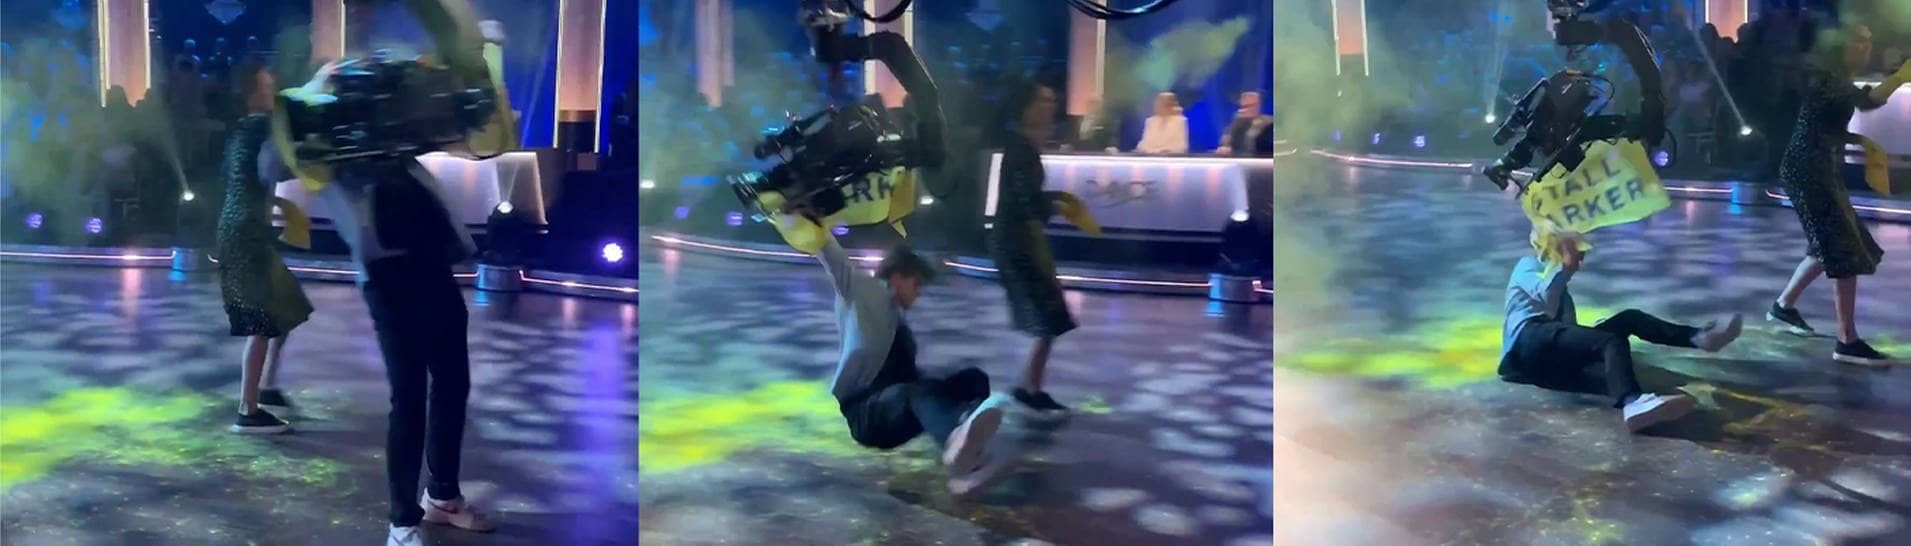 Bei einer Show von Let's Dance in Schweden wird ein junger Mann auf der Bühne von einem Kamerakran umgehauen (Foto: Instagram Återställ Våtmarker)